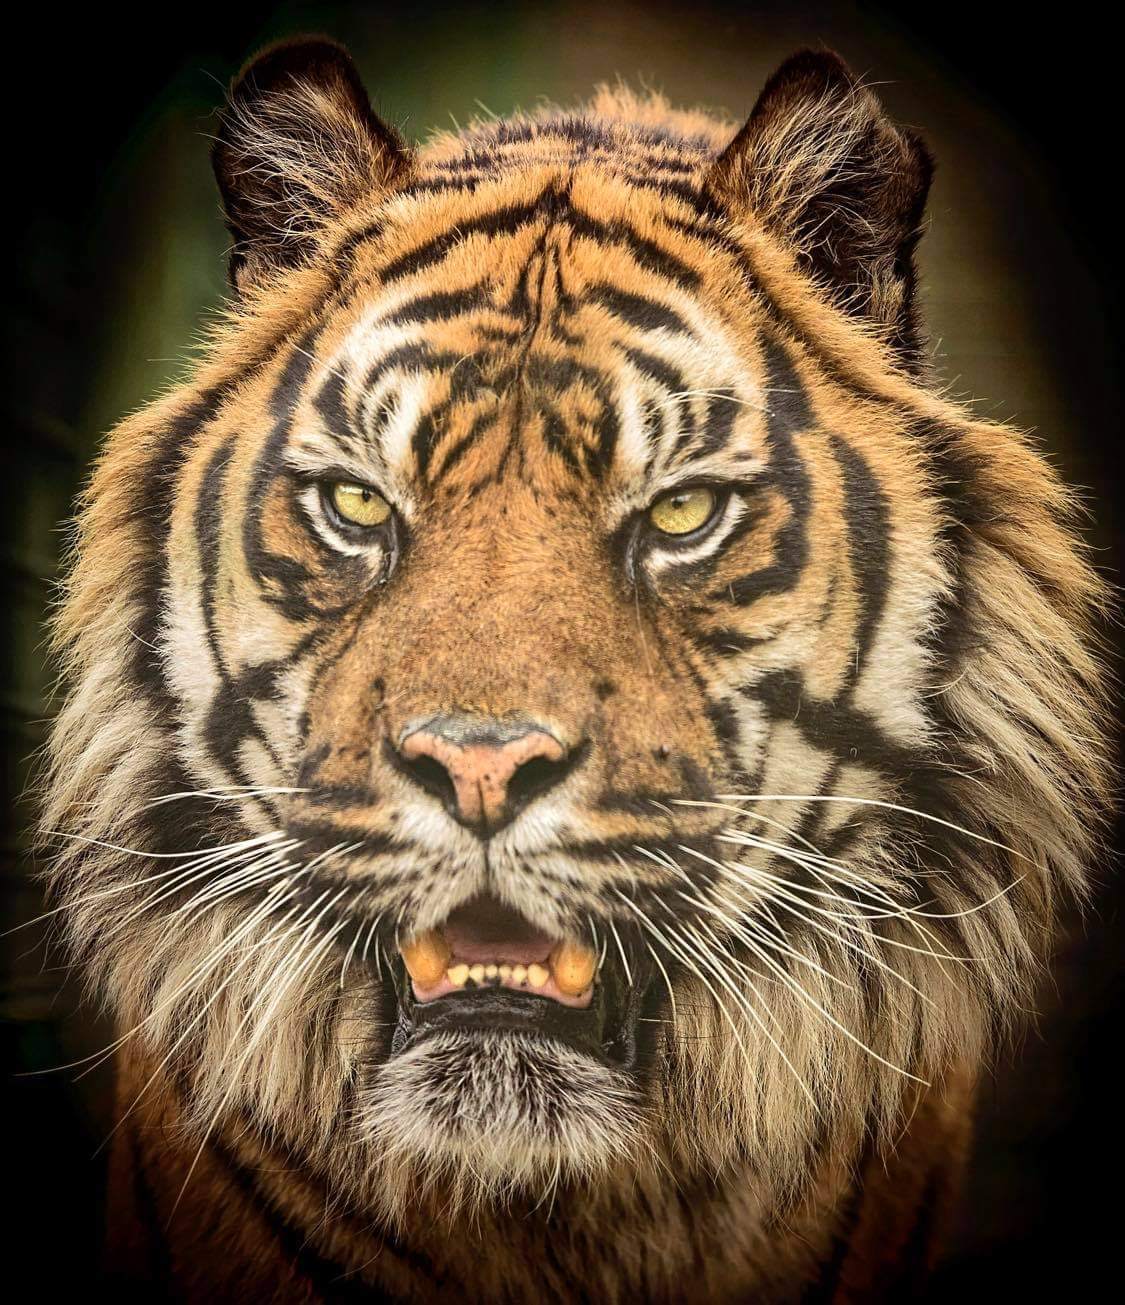 Protect Big Cats - Tiger